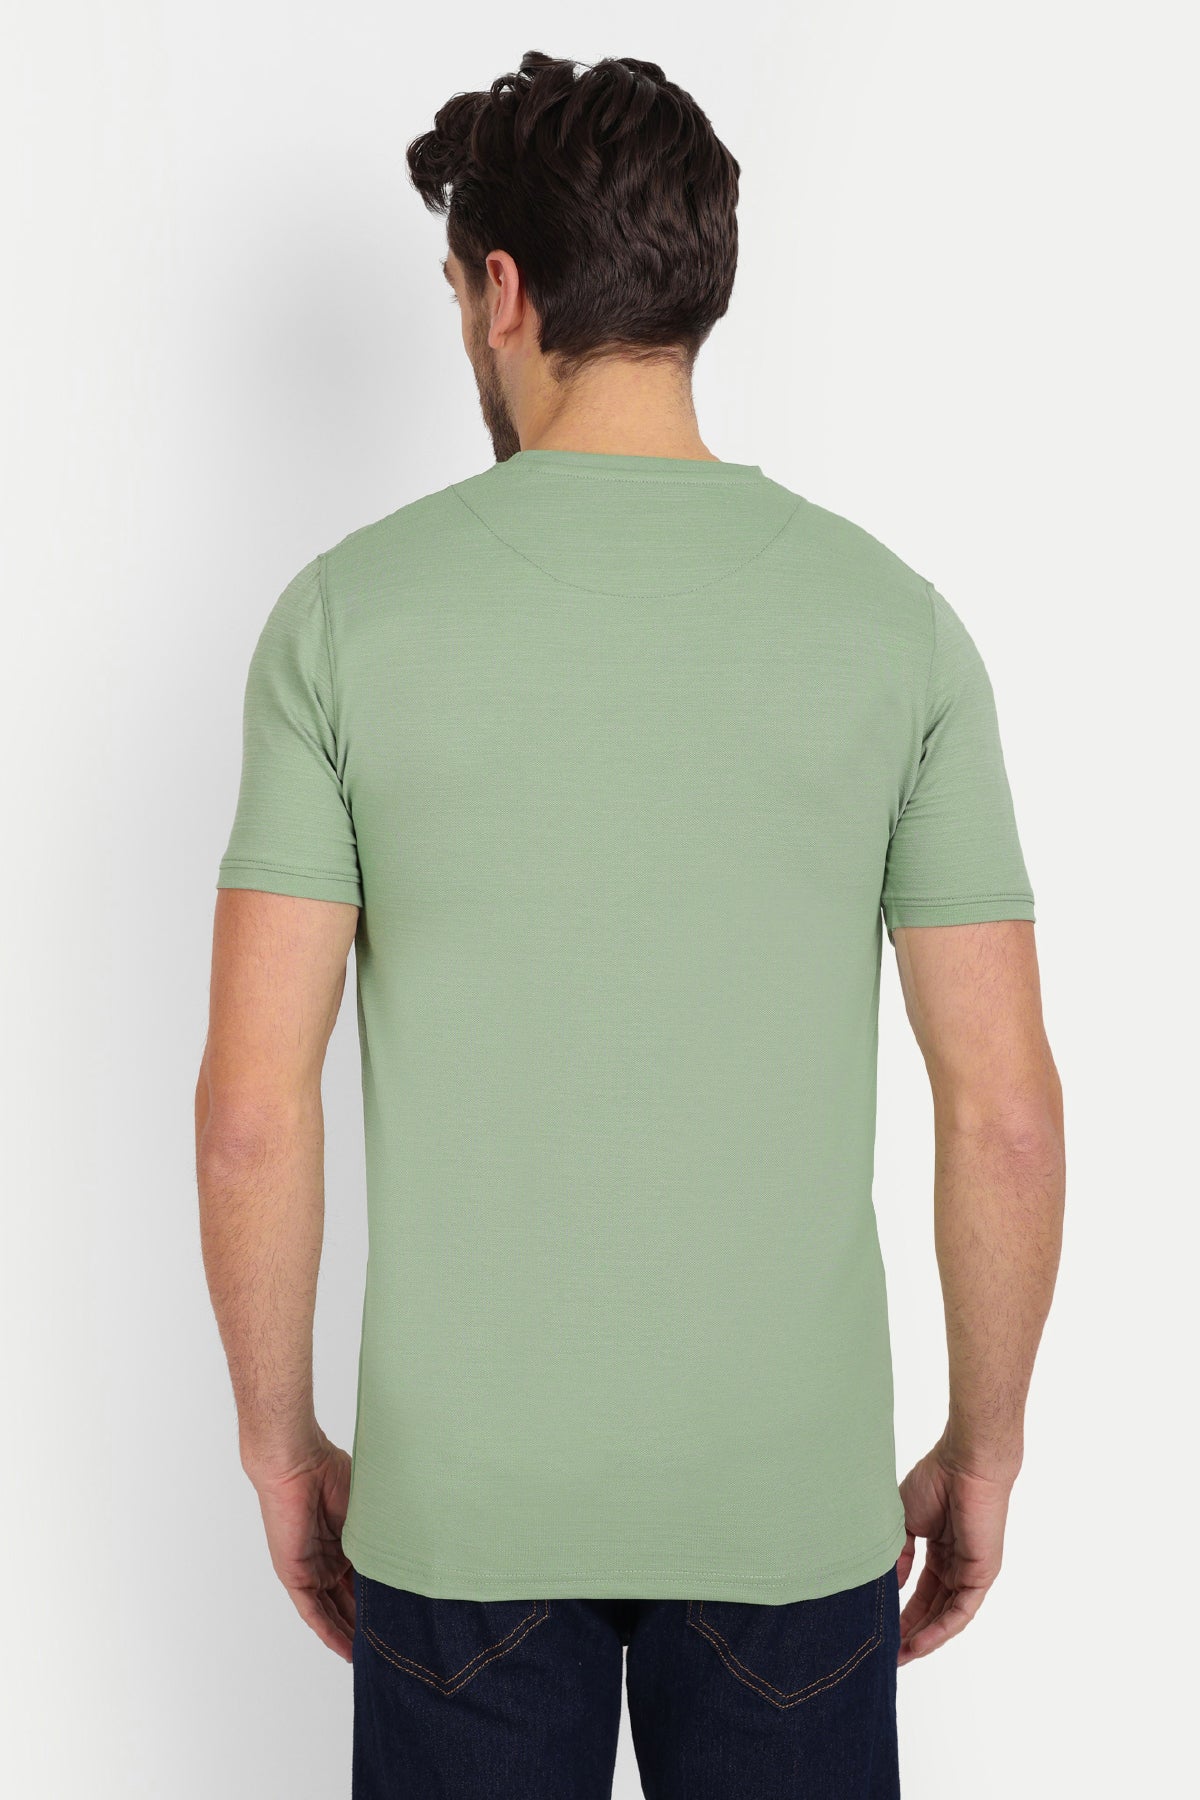 Printed Men Round Neck Spring Green T-Shirt